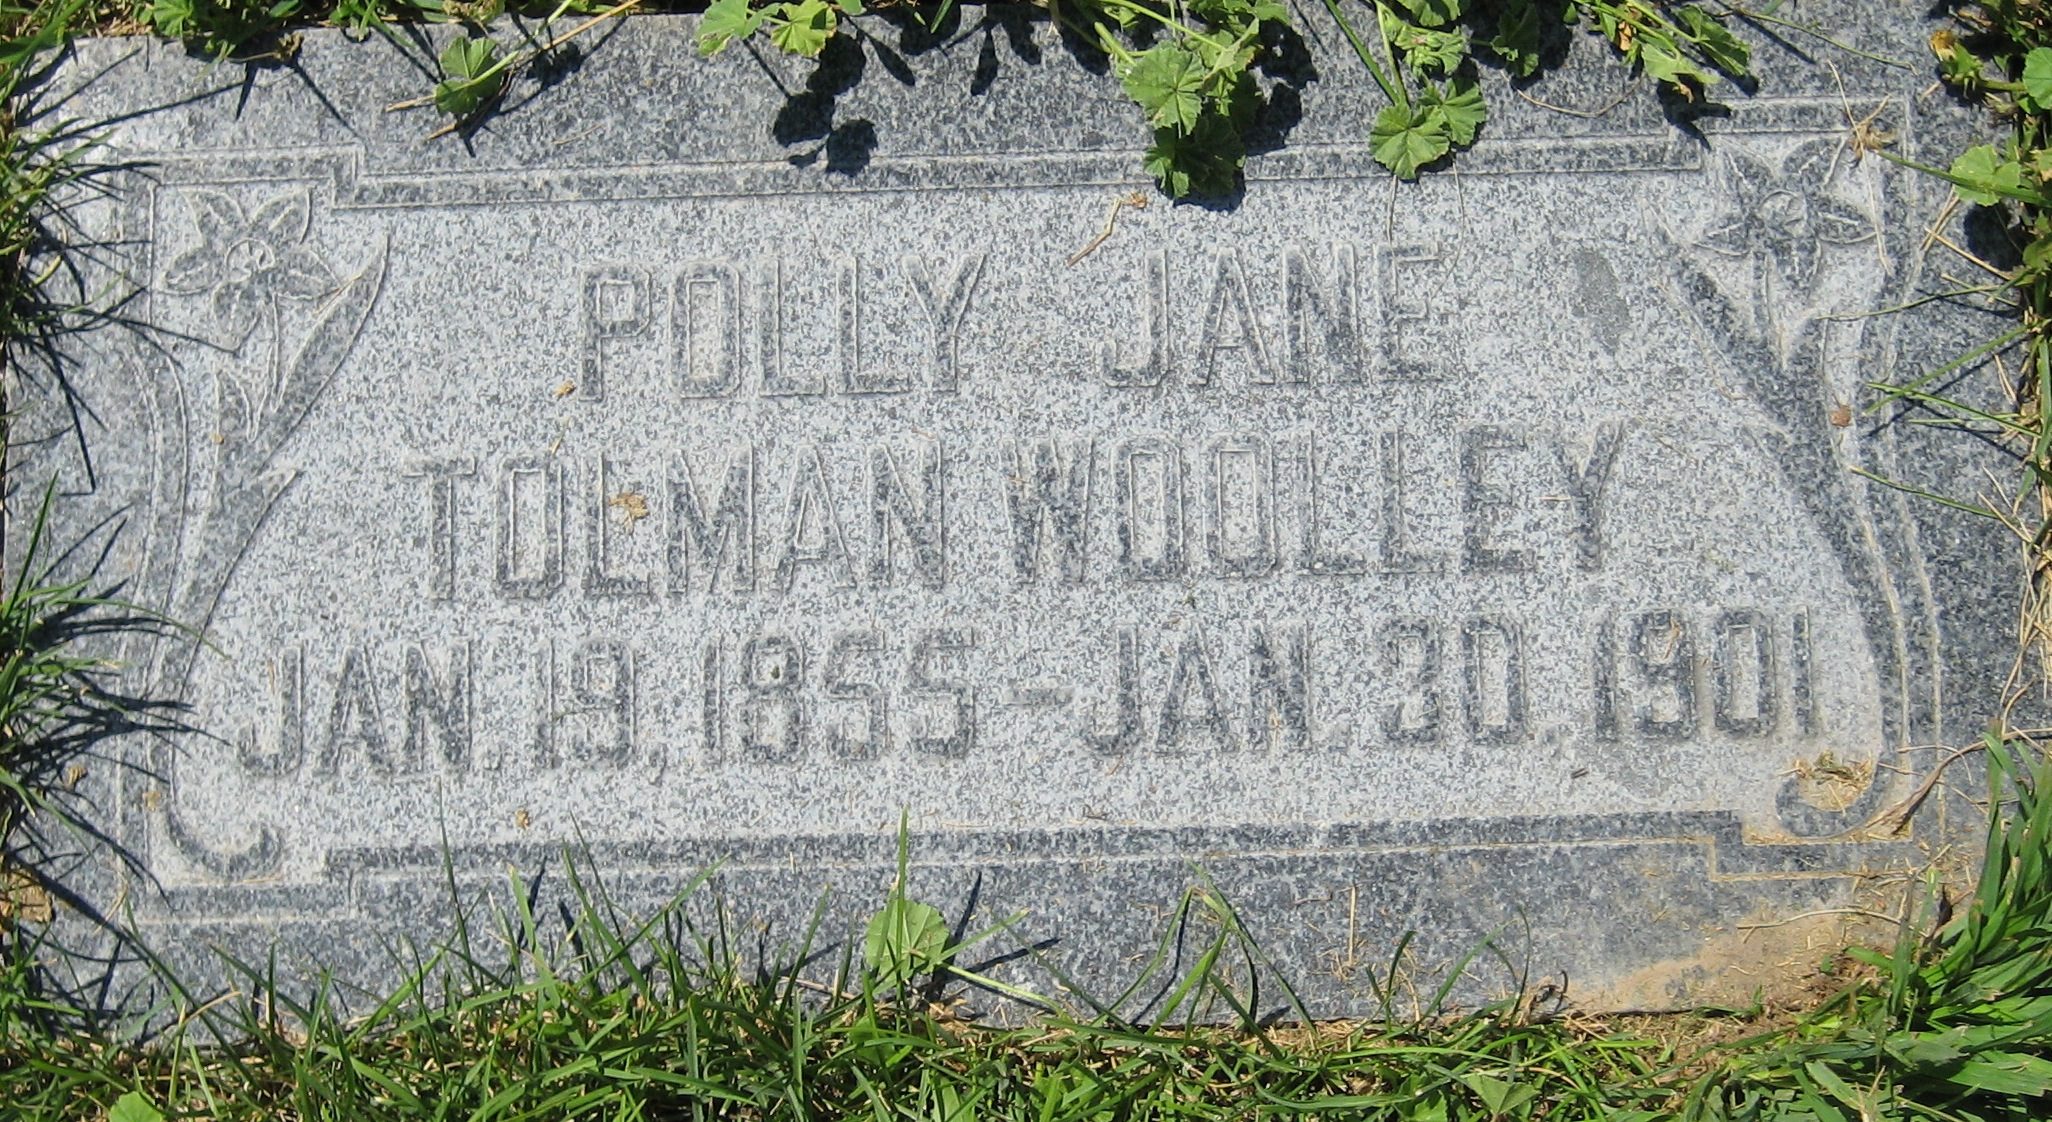 Polly Jane Tolman (1855-1901)